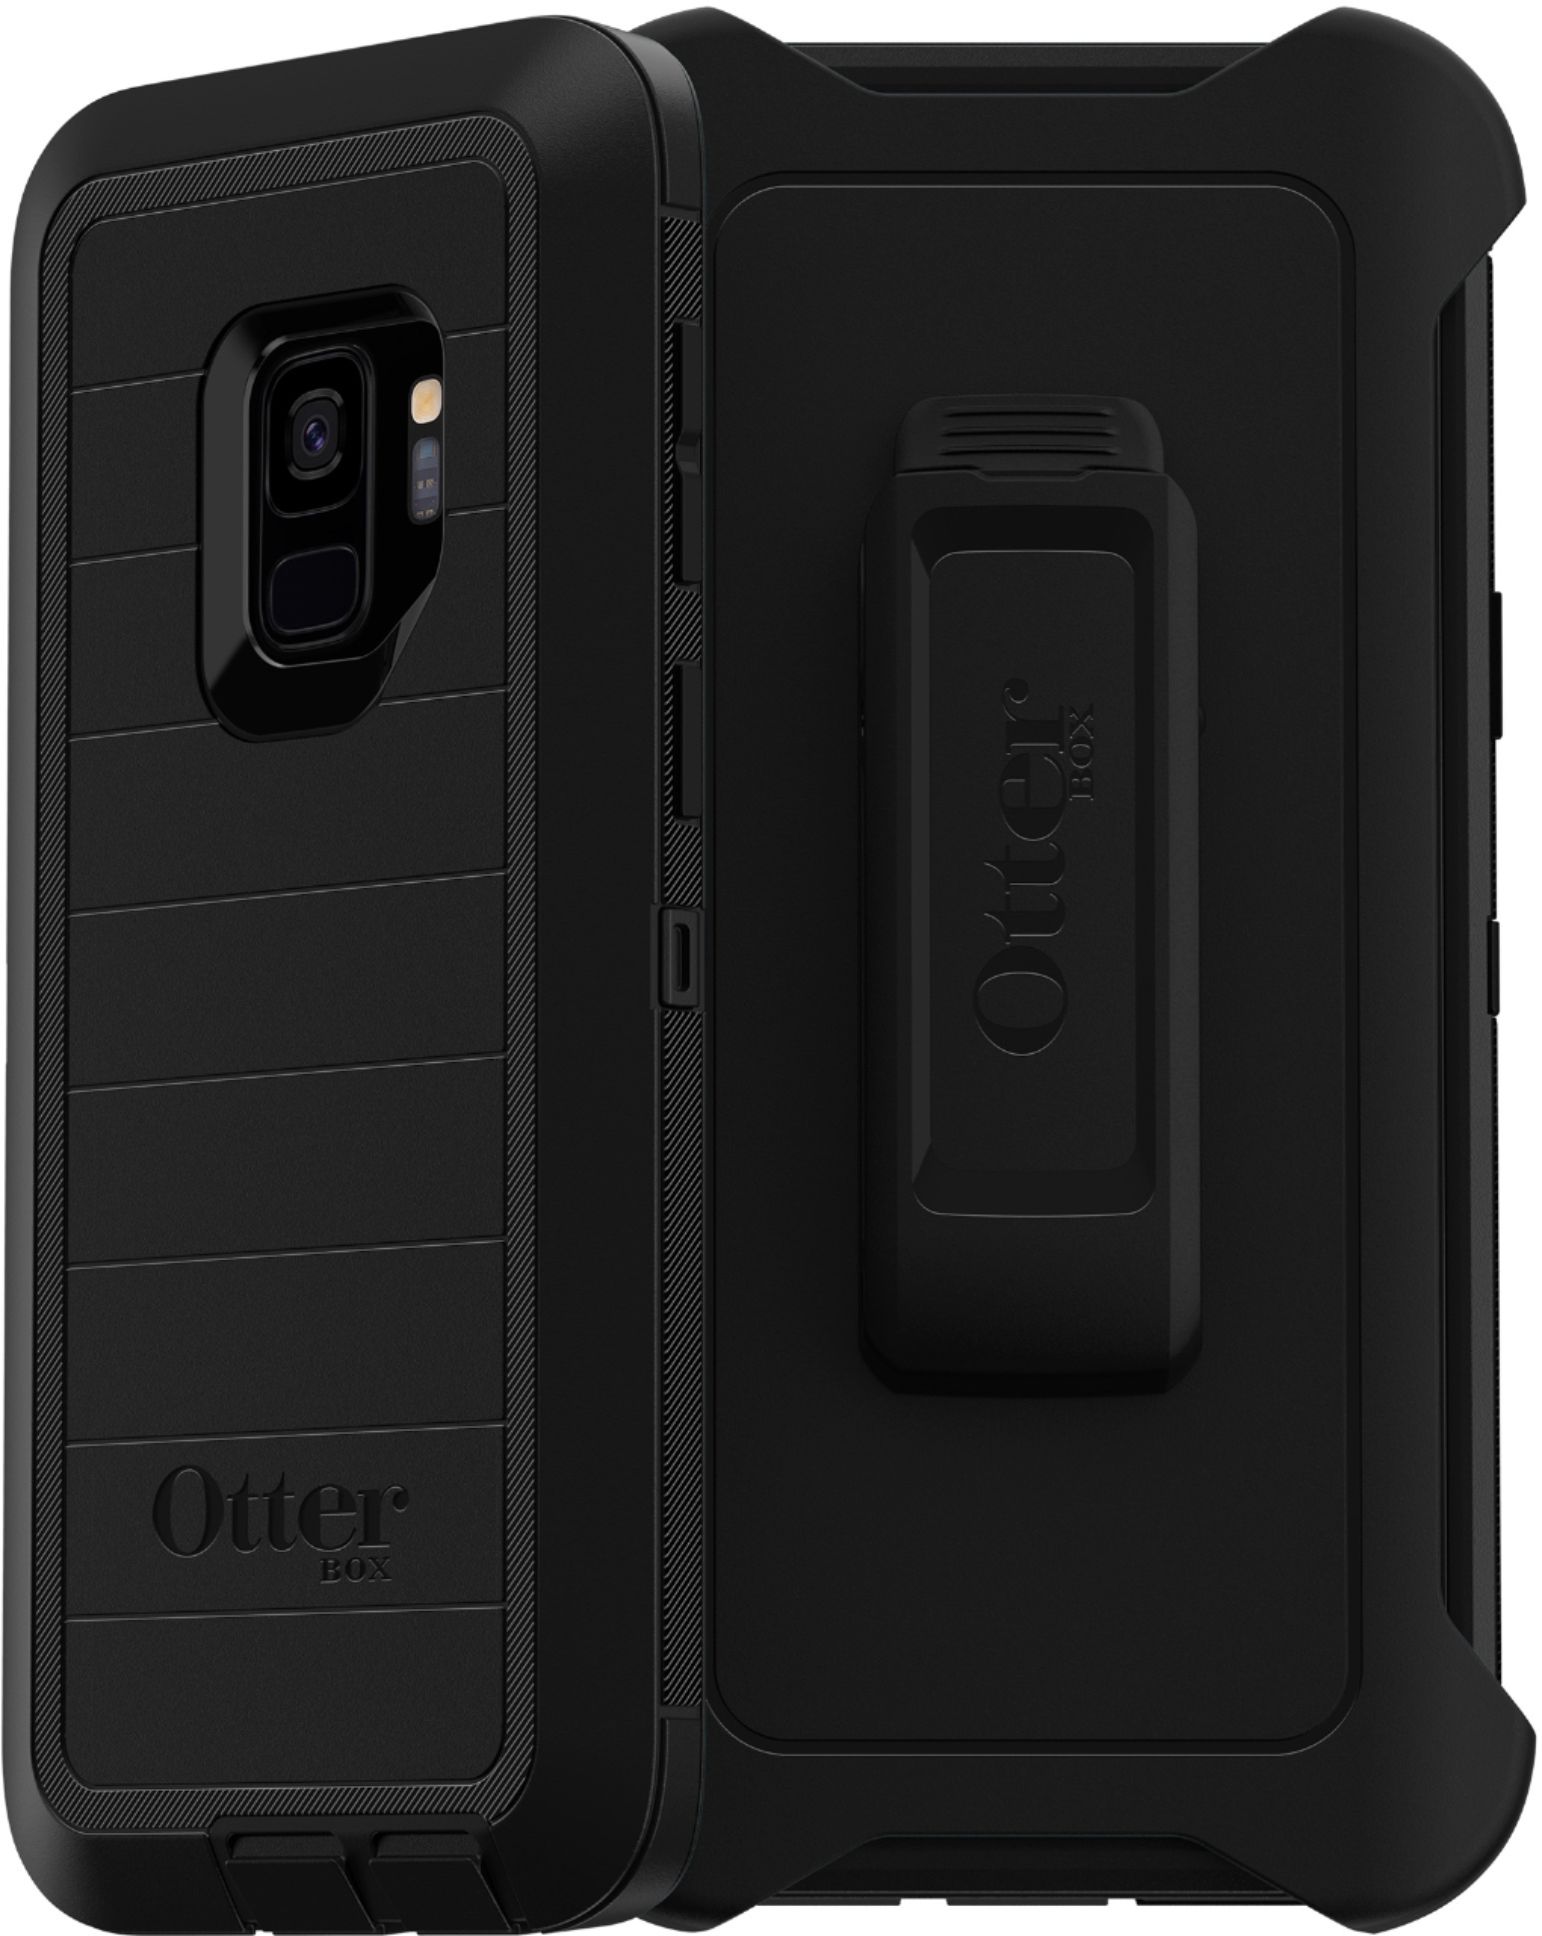 Omgeving Scheiding Scheiden Best Buy: OtterBox Defender Series Pro Modular Case for Samsung Galaxy S9  Black 51944BBR